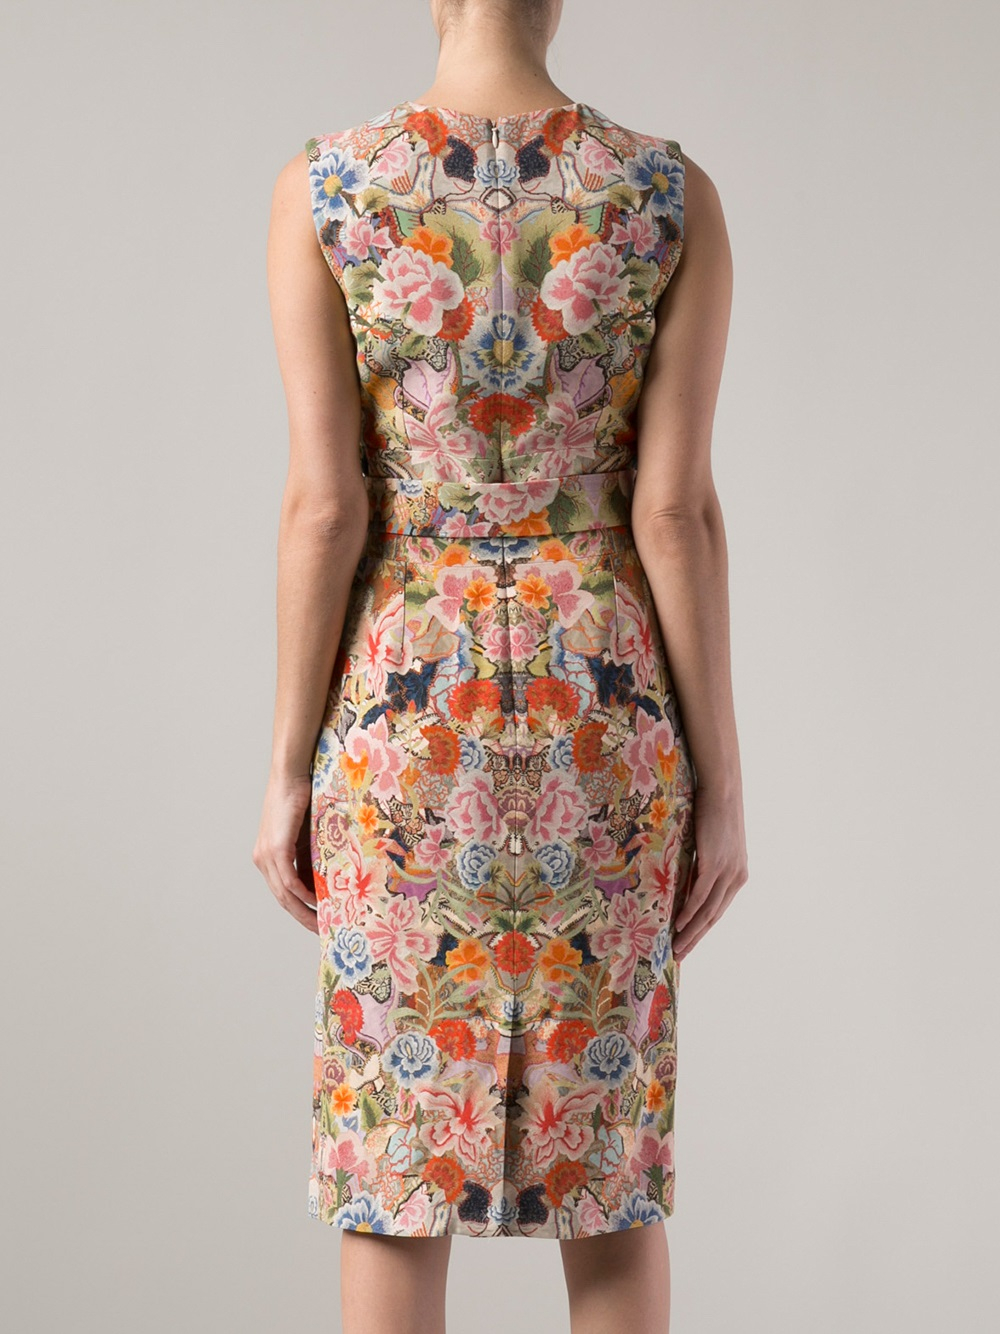 Lyst - Alexander mcqueen Flower Print Dress